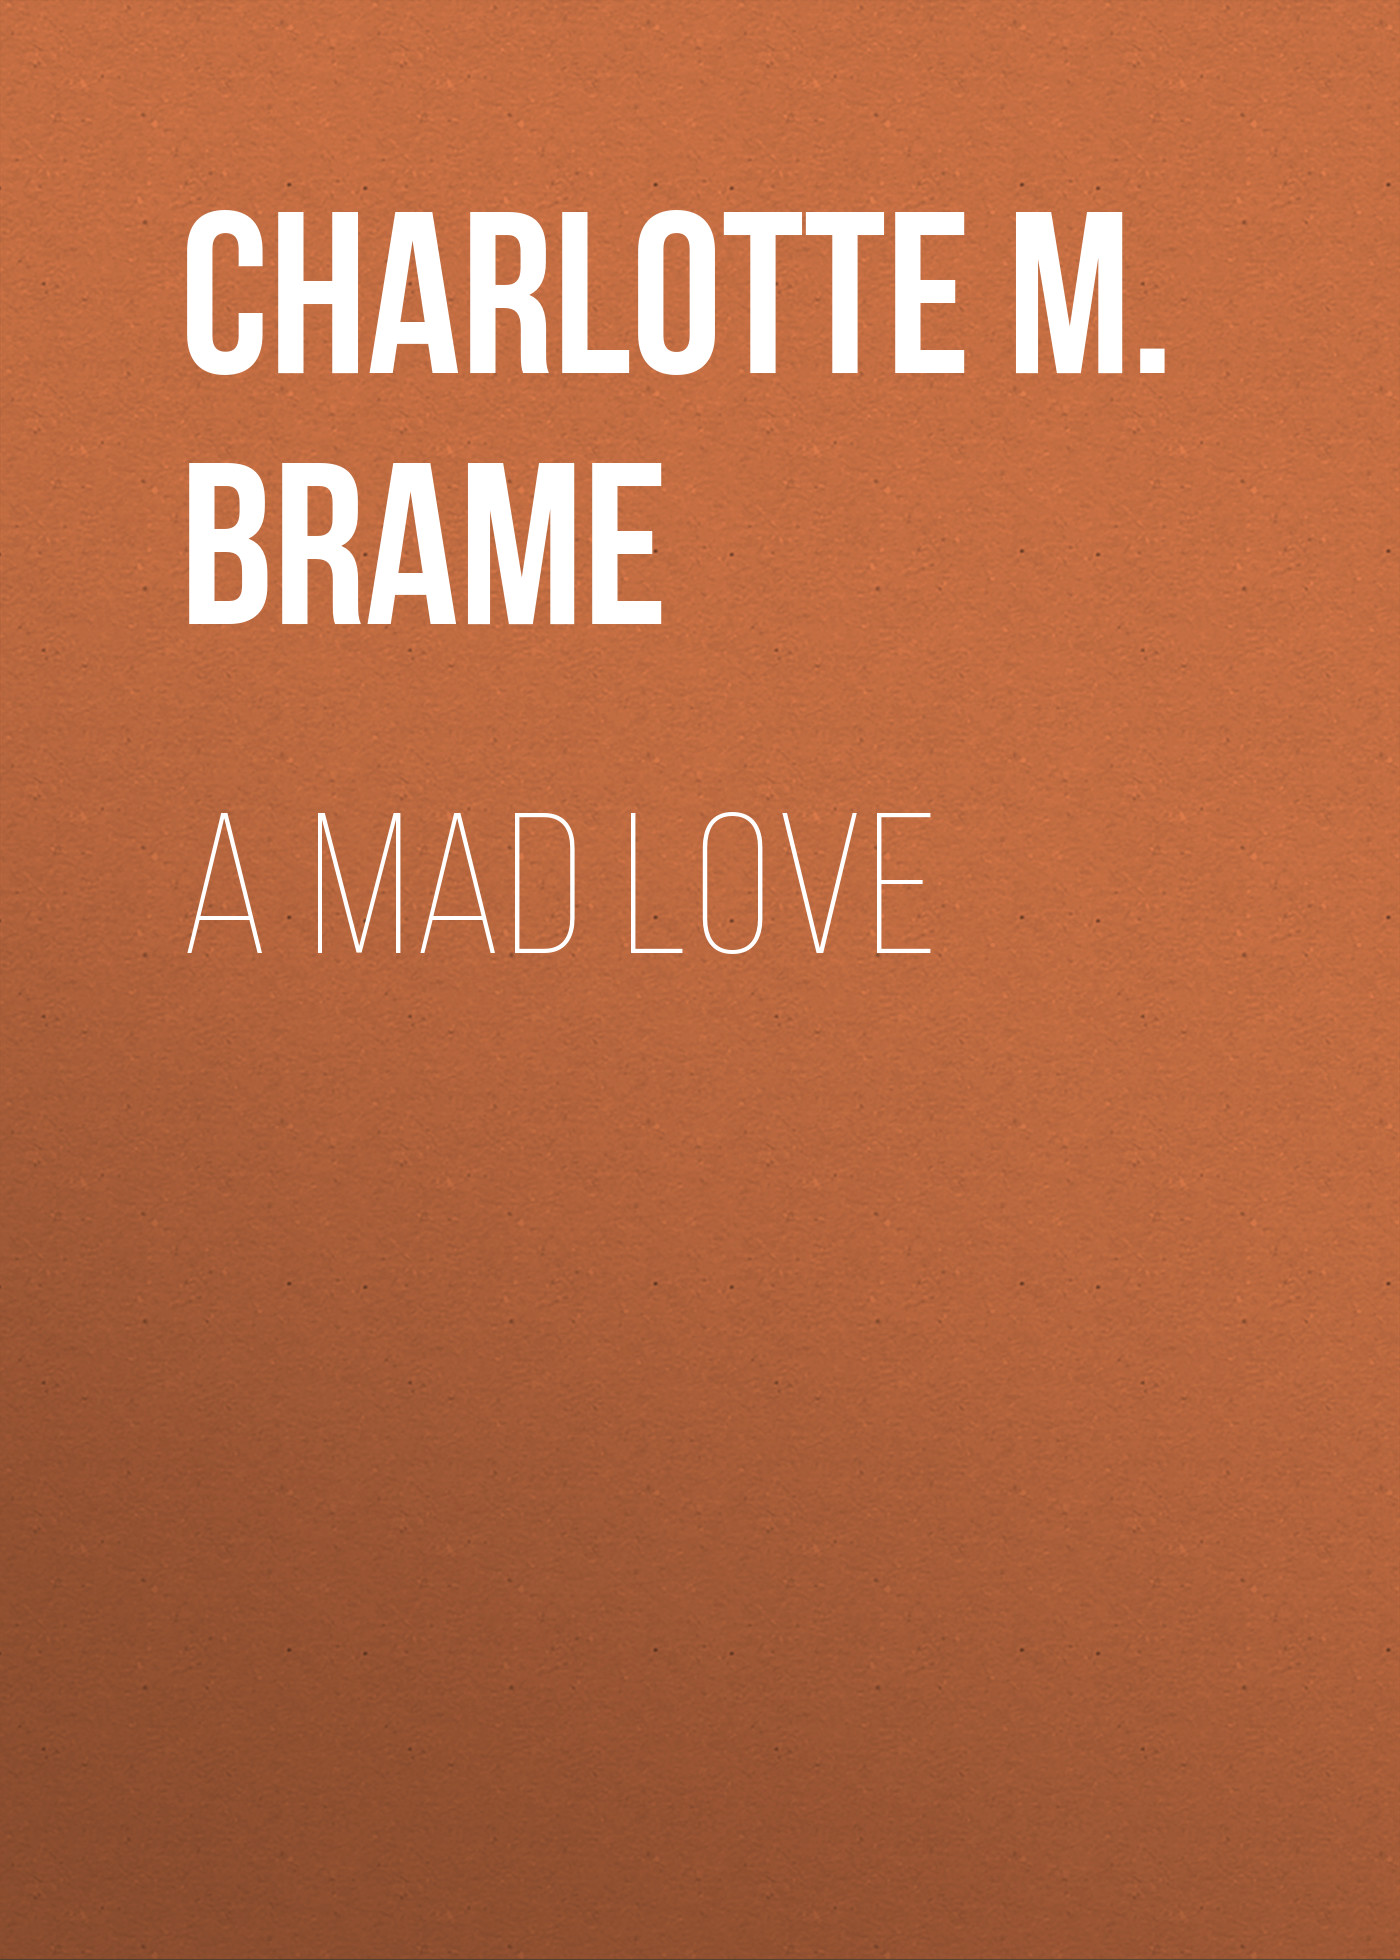 Книга A Mad Love из серии , созданная Charlotte Brame, может относится к жанру Зарубежная старинная литература, Зарубежная классика. Стоимость электронной книги A Mad Love с идентификатором 24179932 составляет 0.90 руб.